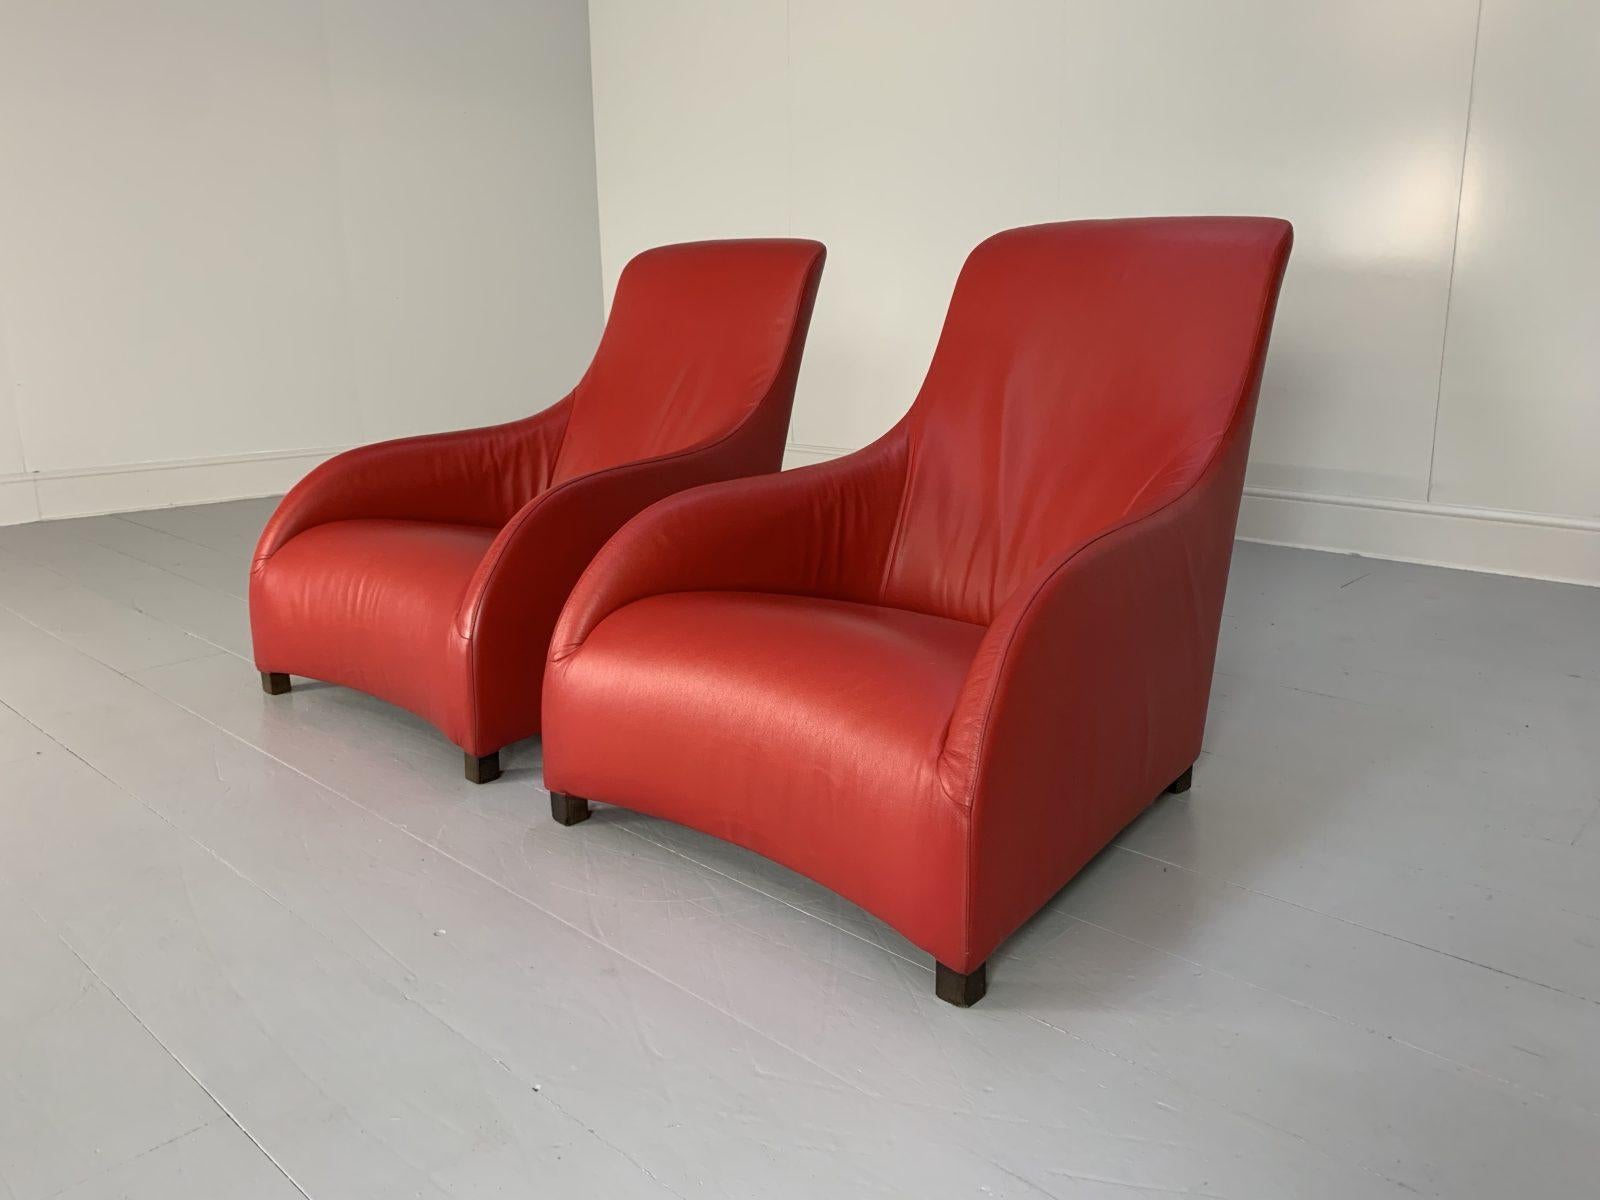 Bonjour les amis, et bienvenue à une nouvelle offre incontournable de Lord Browns Furniture, la première source de canapés et de chaises de qualité au Royaume-Uni.

Nous vous proposons une paire de fauteuils Maxalto 